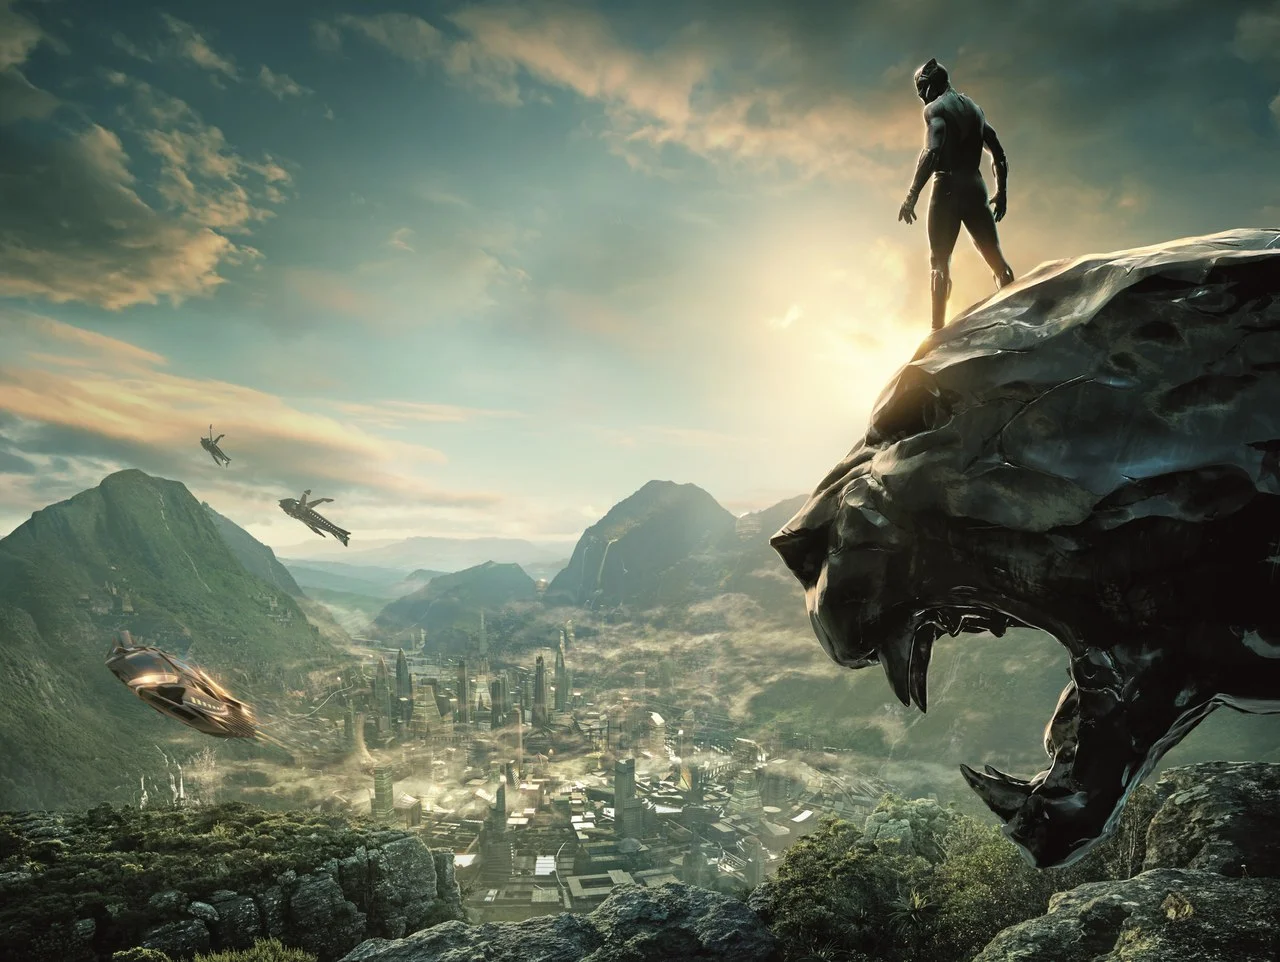 Нам уже удалось посмотреть новый фильм Marvel Studios — «Черную пантеру». В этом материале мы традиционно порассуждаем о том, какое влияние он окажет на киновселенную.